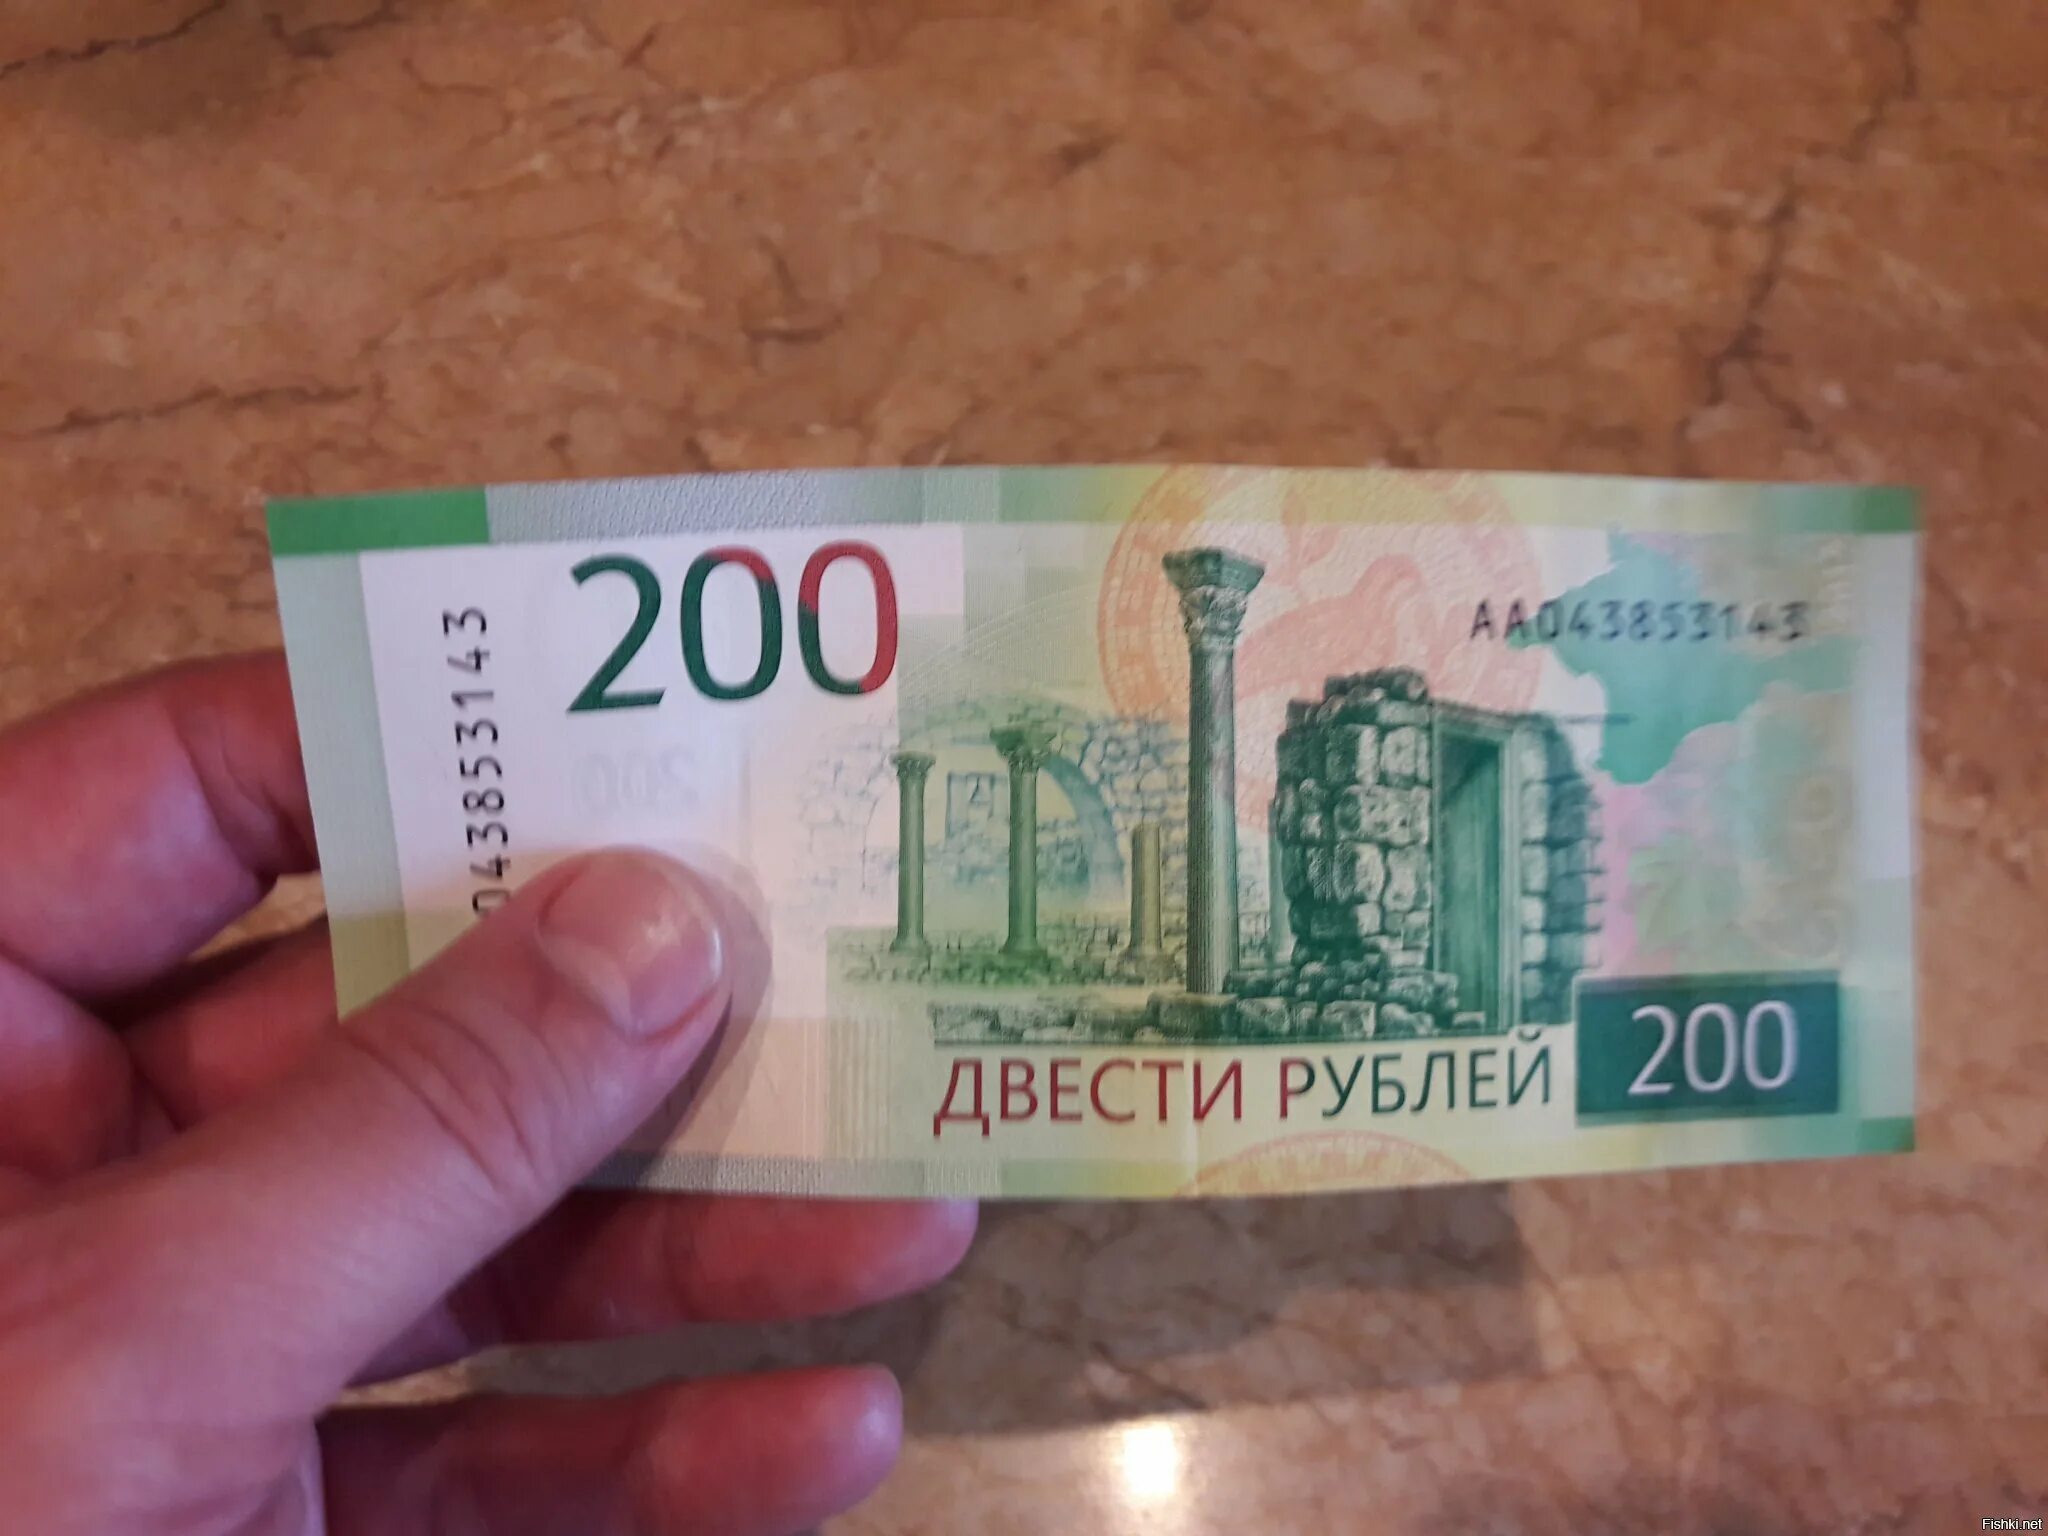 200 рублей 2019. 200 Рублей груз 200. 200 Штук. На улице 200 руб.